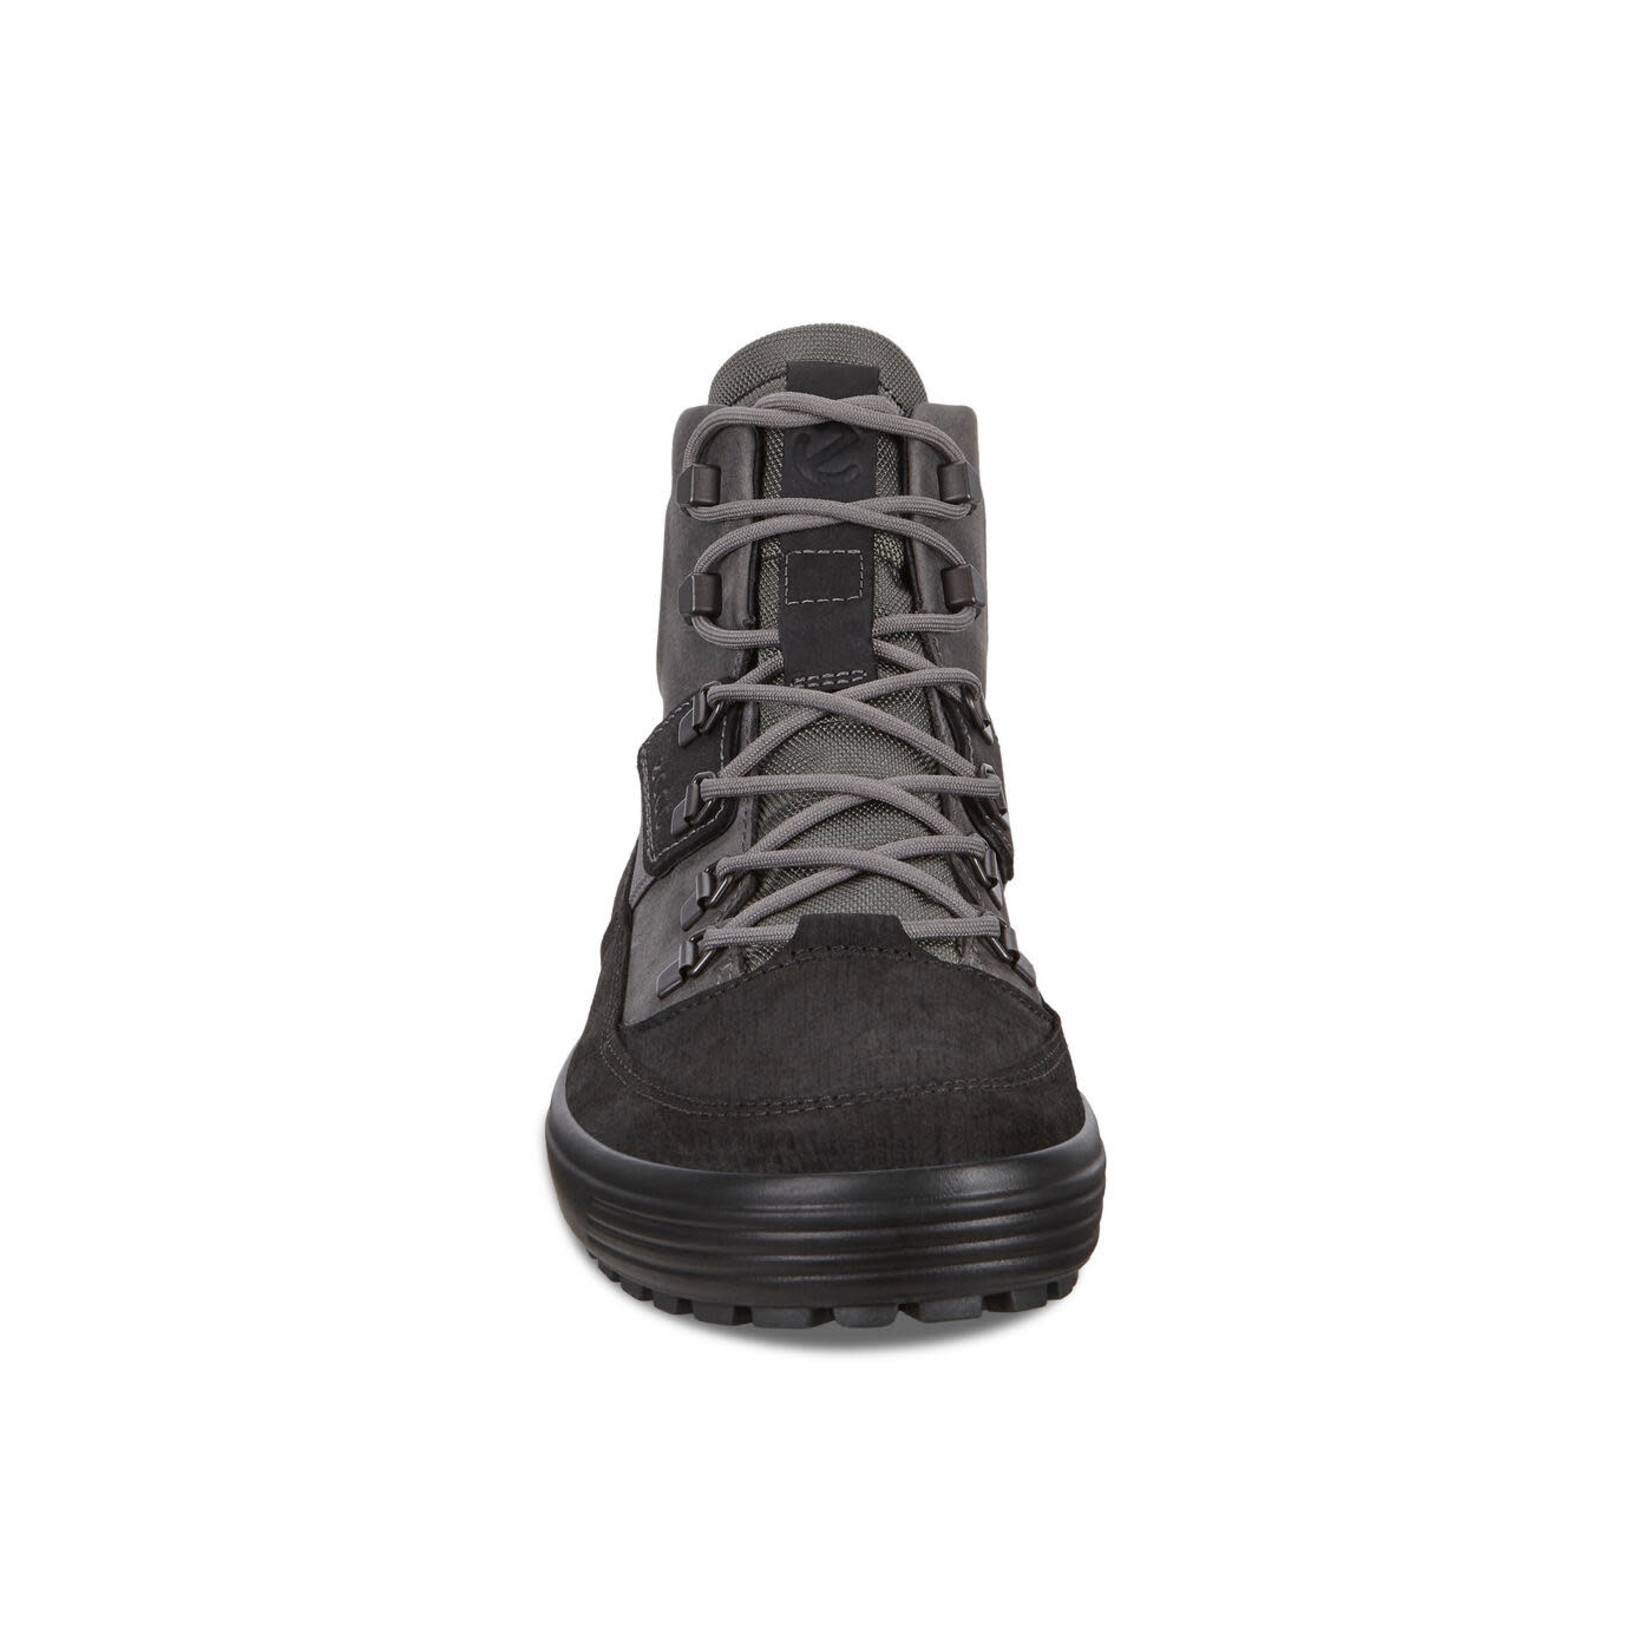 Ecco Soft 7 Tred Boot Black/Titanium